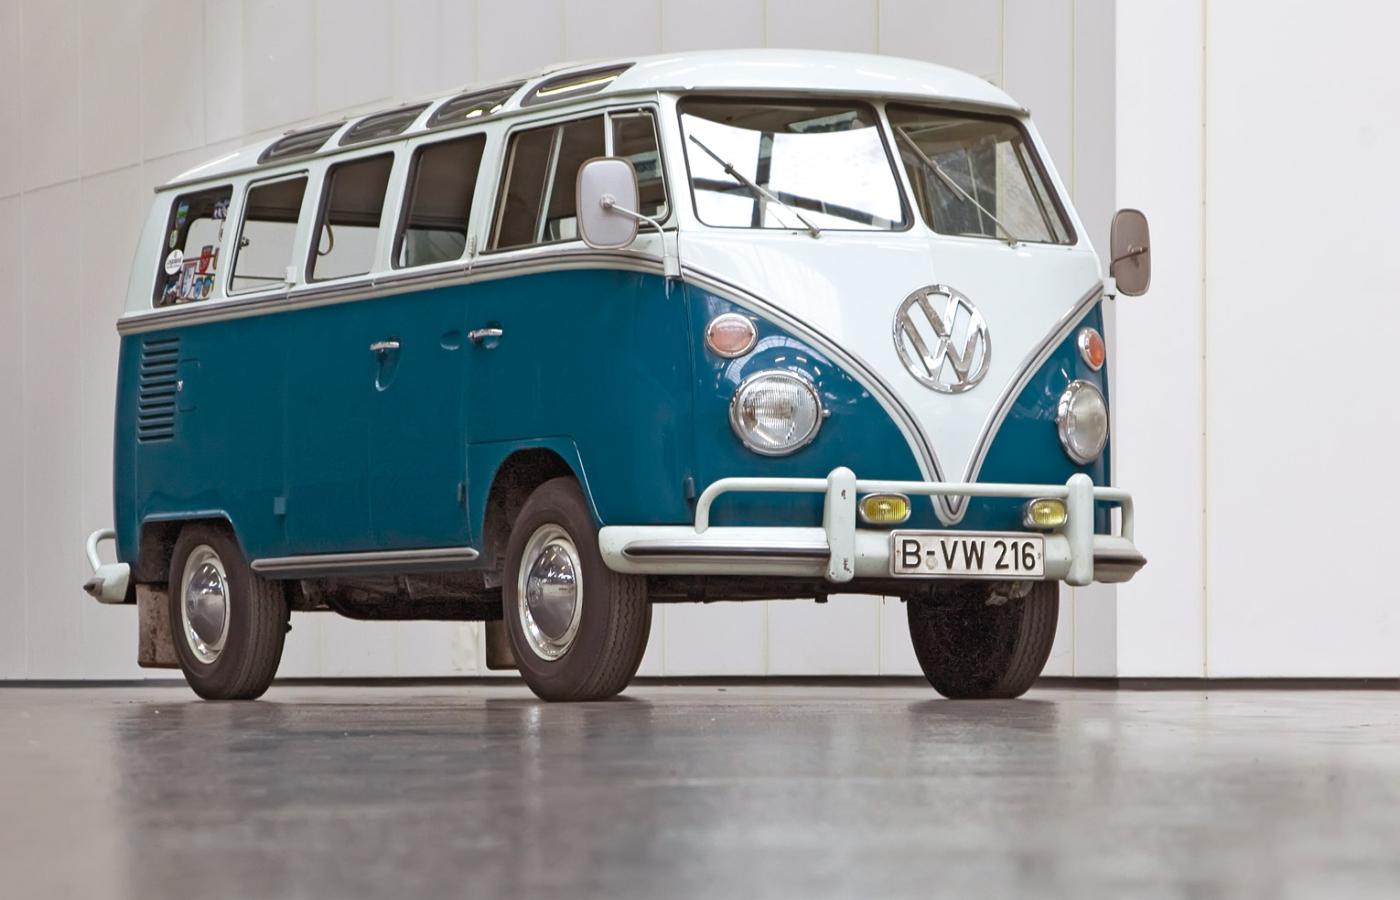 Słynny Volkswagen odchodzi do lamusa Koniec sezonu na